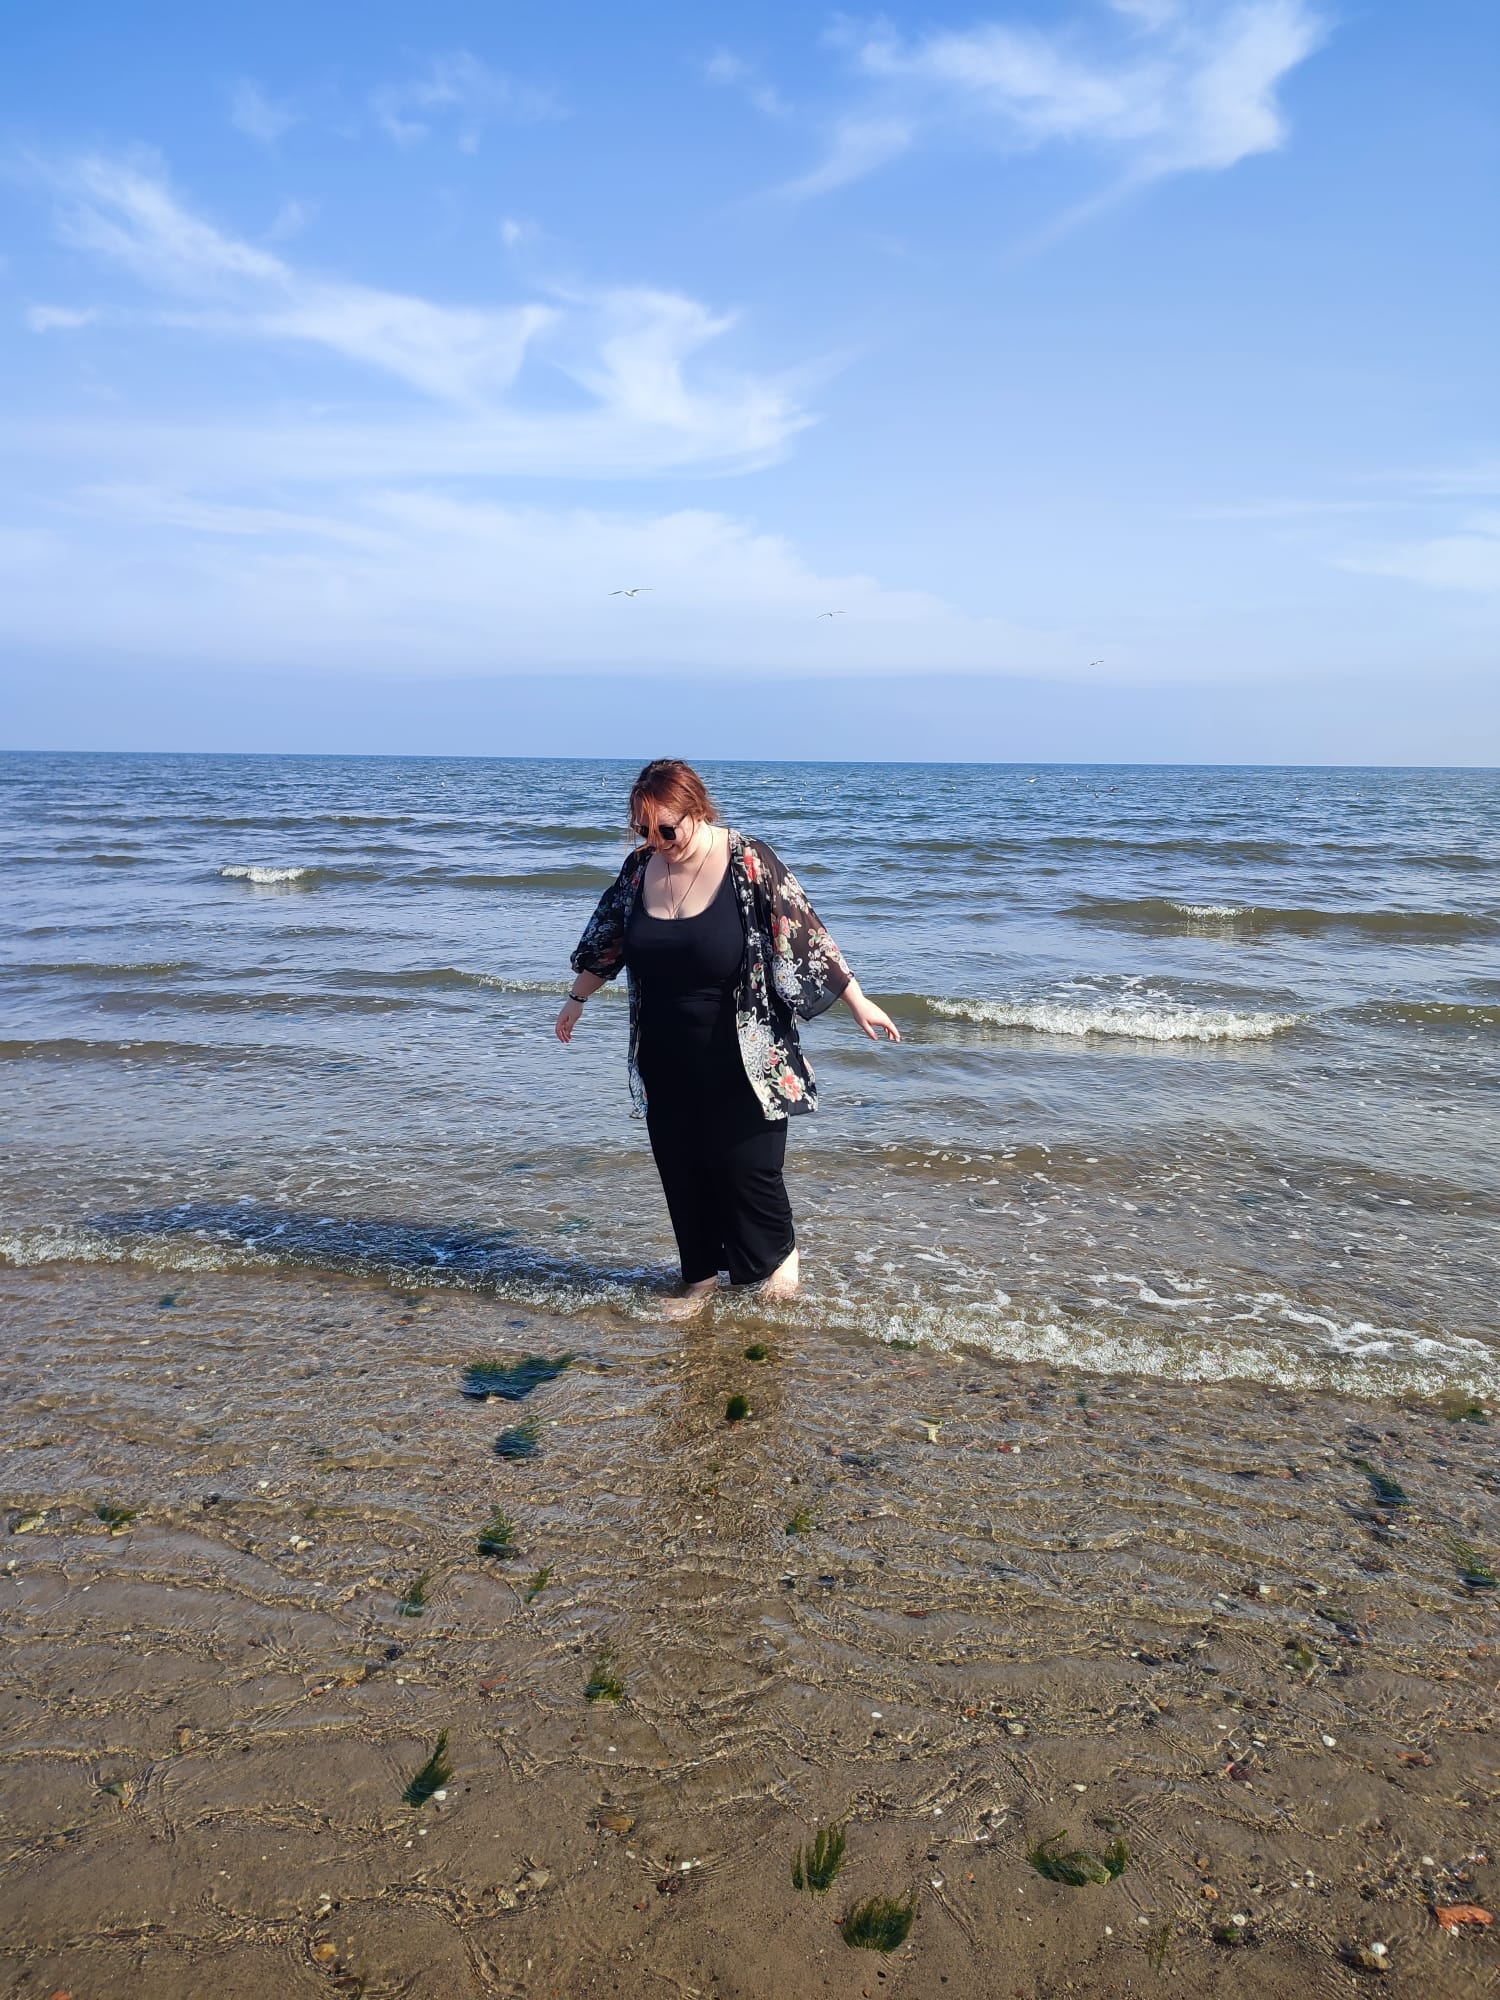 Babsi in luftiger Kleidung läuft barfuß am Strand. Hinter ihr sind blauer Himmel und Wellen.